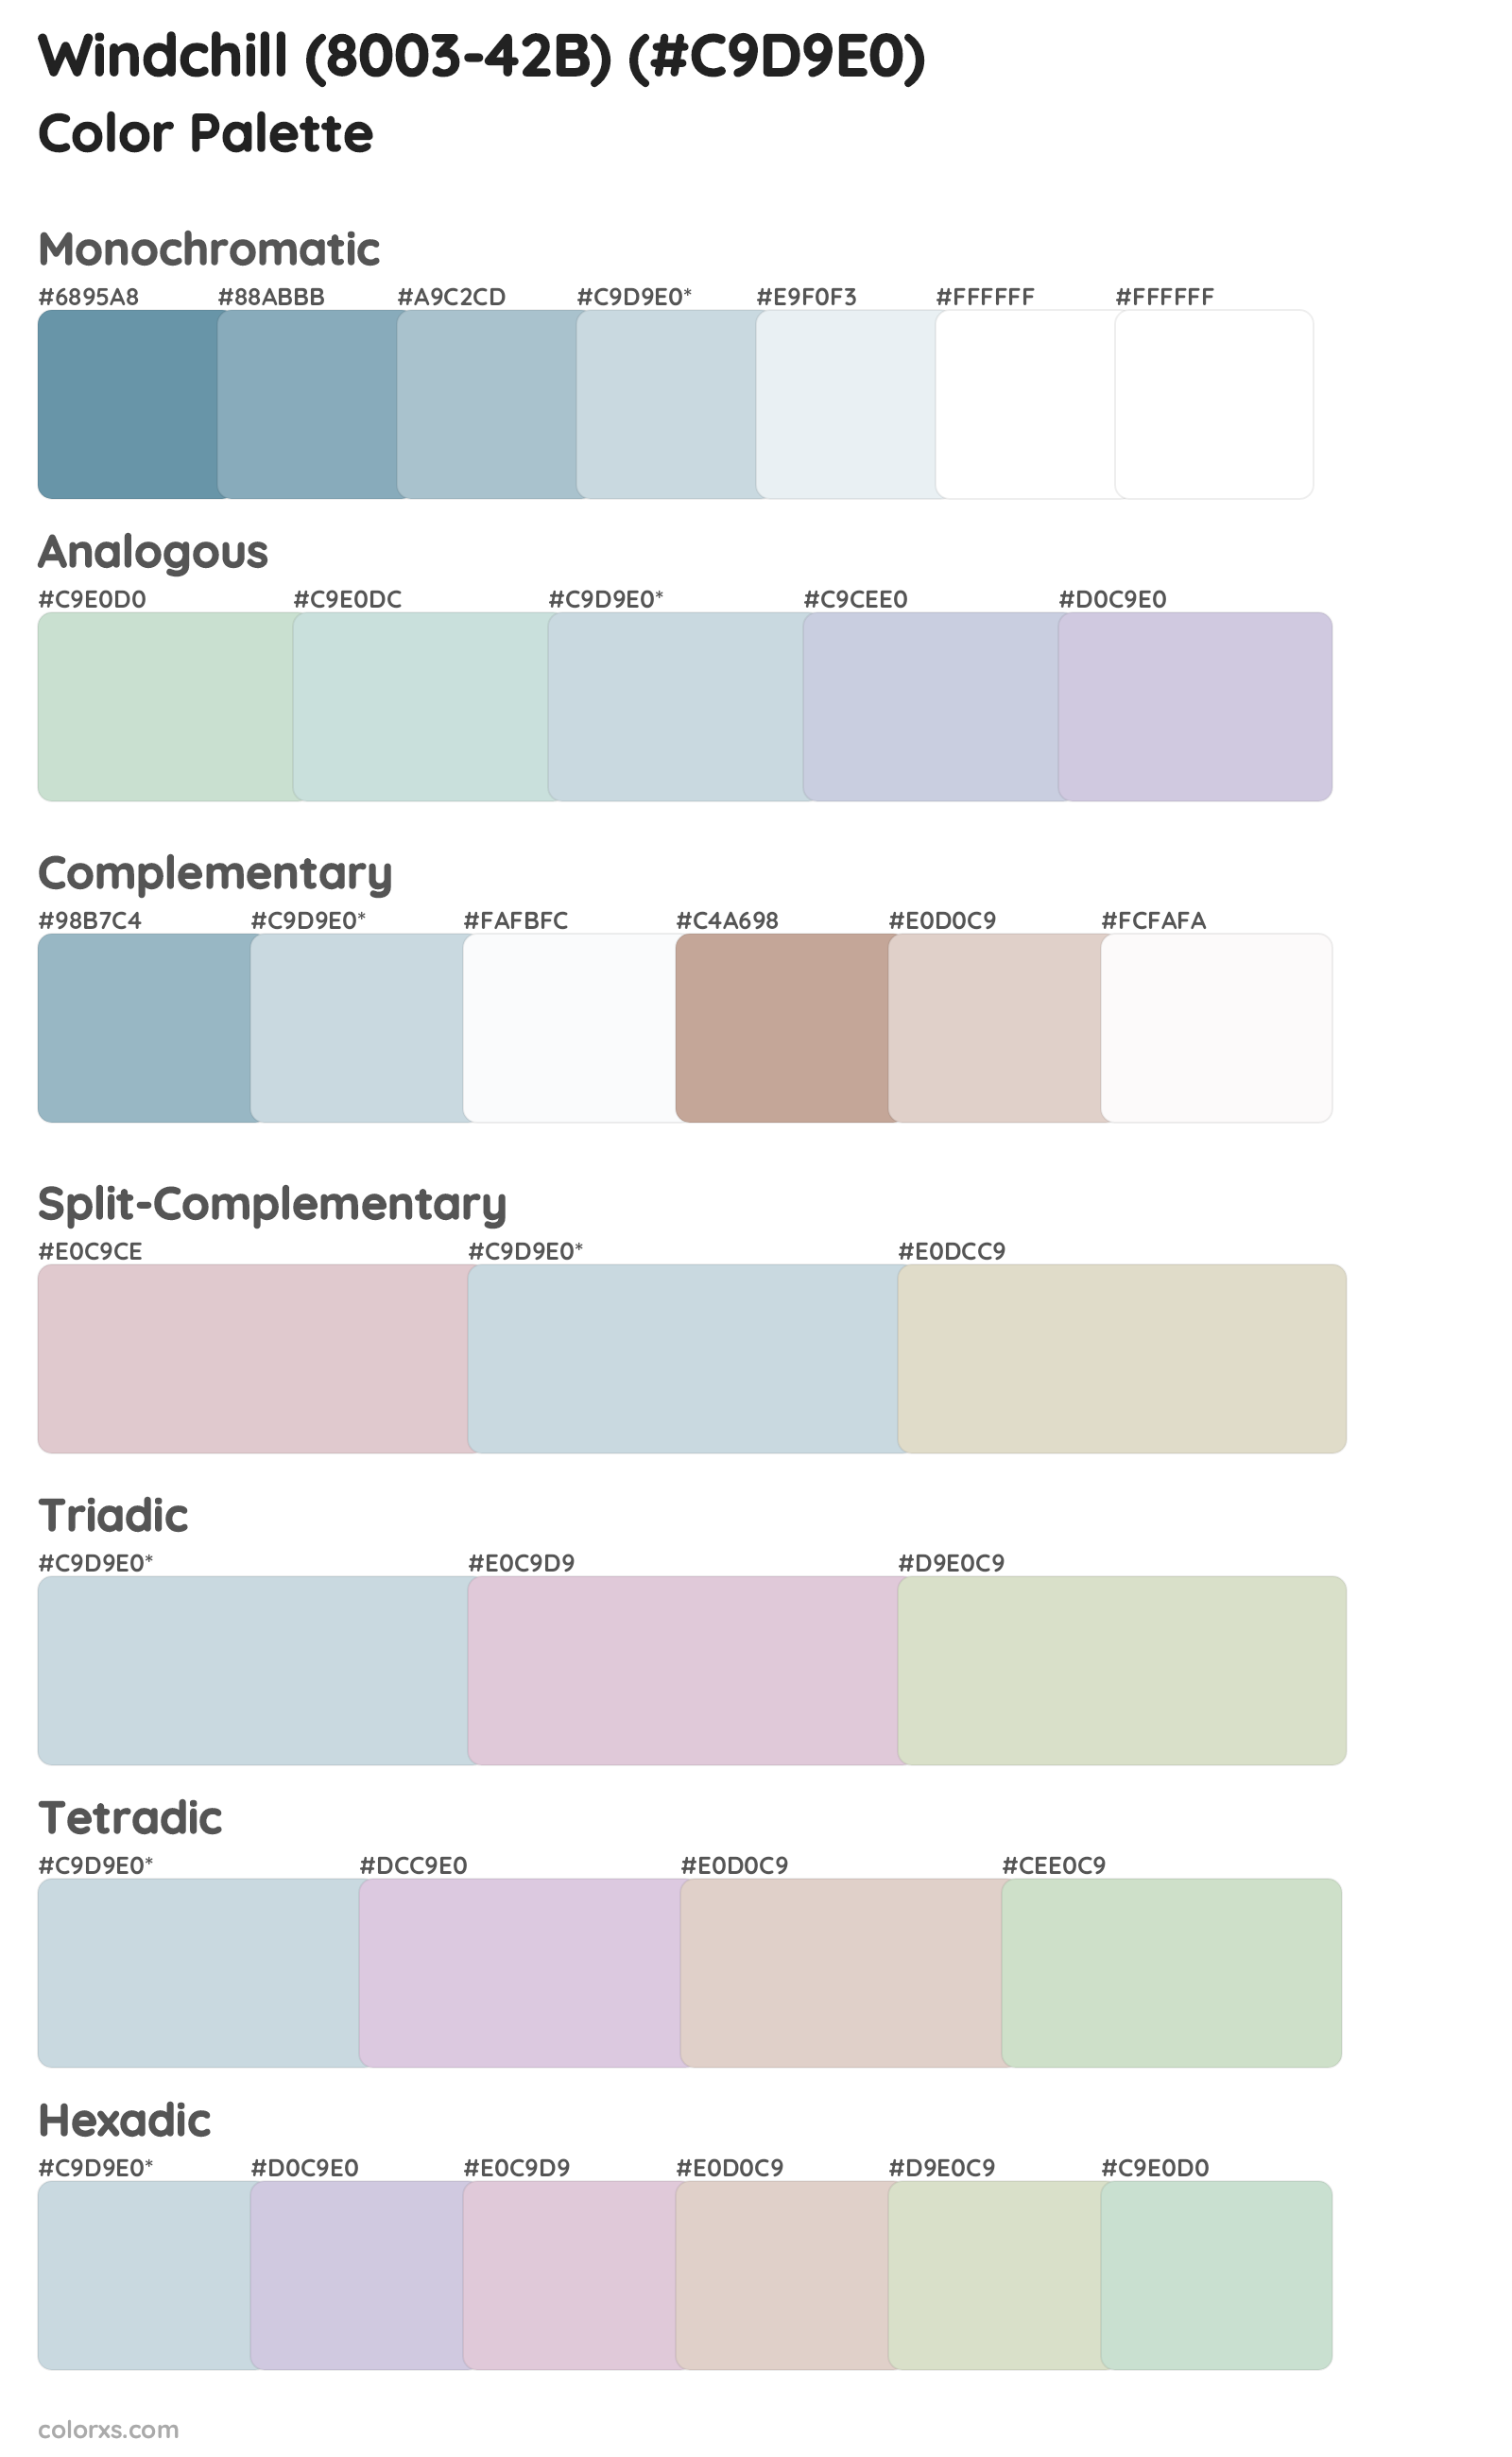 Windchill (8003-42B) Color Scheme Palettes